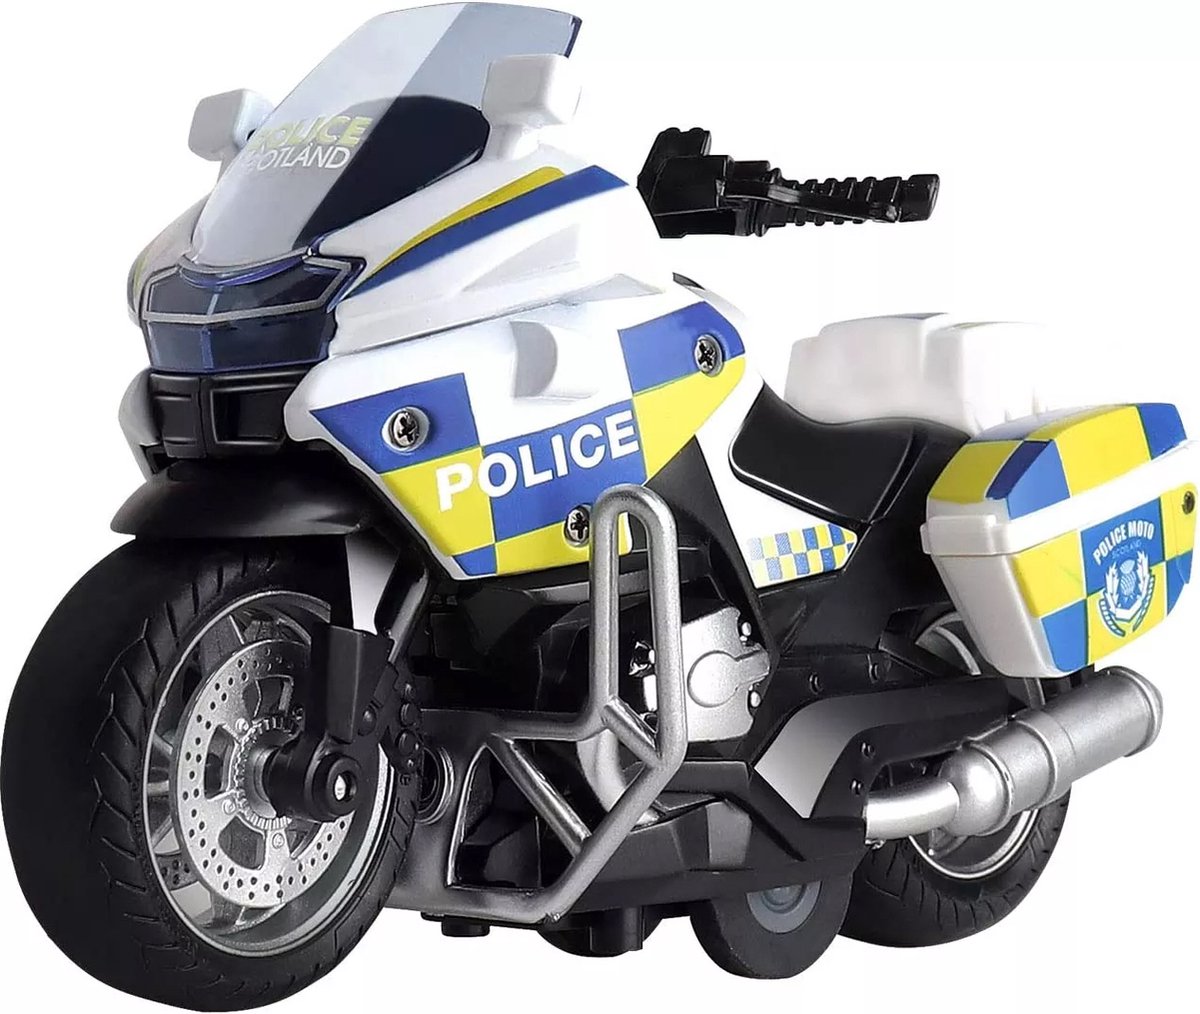 DieCast politiemotor - Classical Moto - metall motorcycle - pull-back /terug trek functie - met licht en geluidseffecten